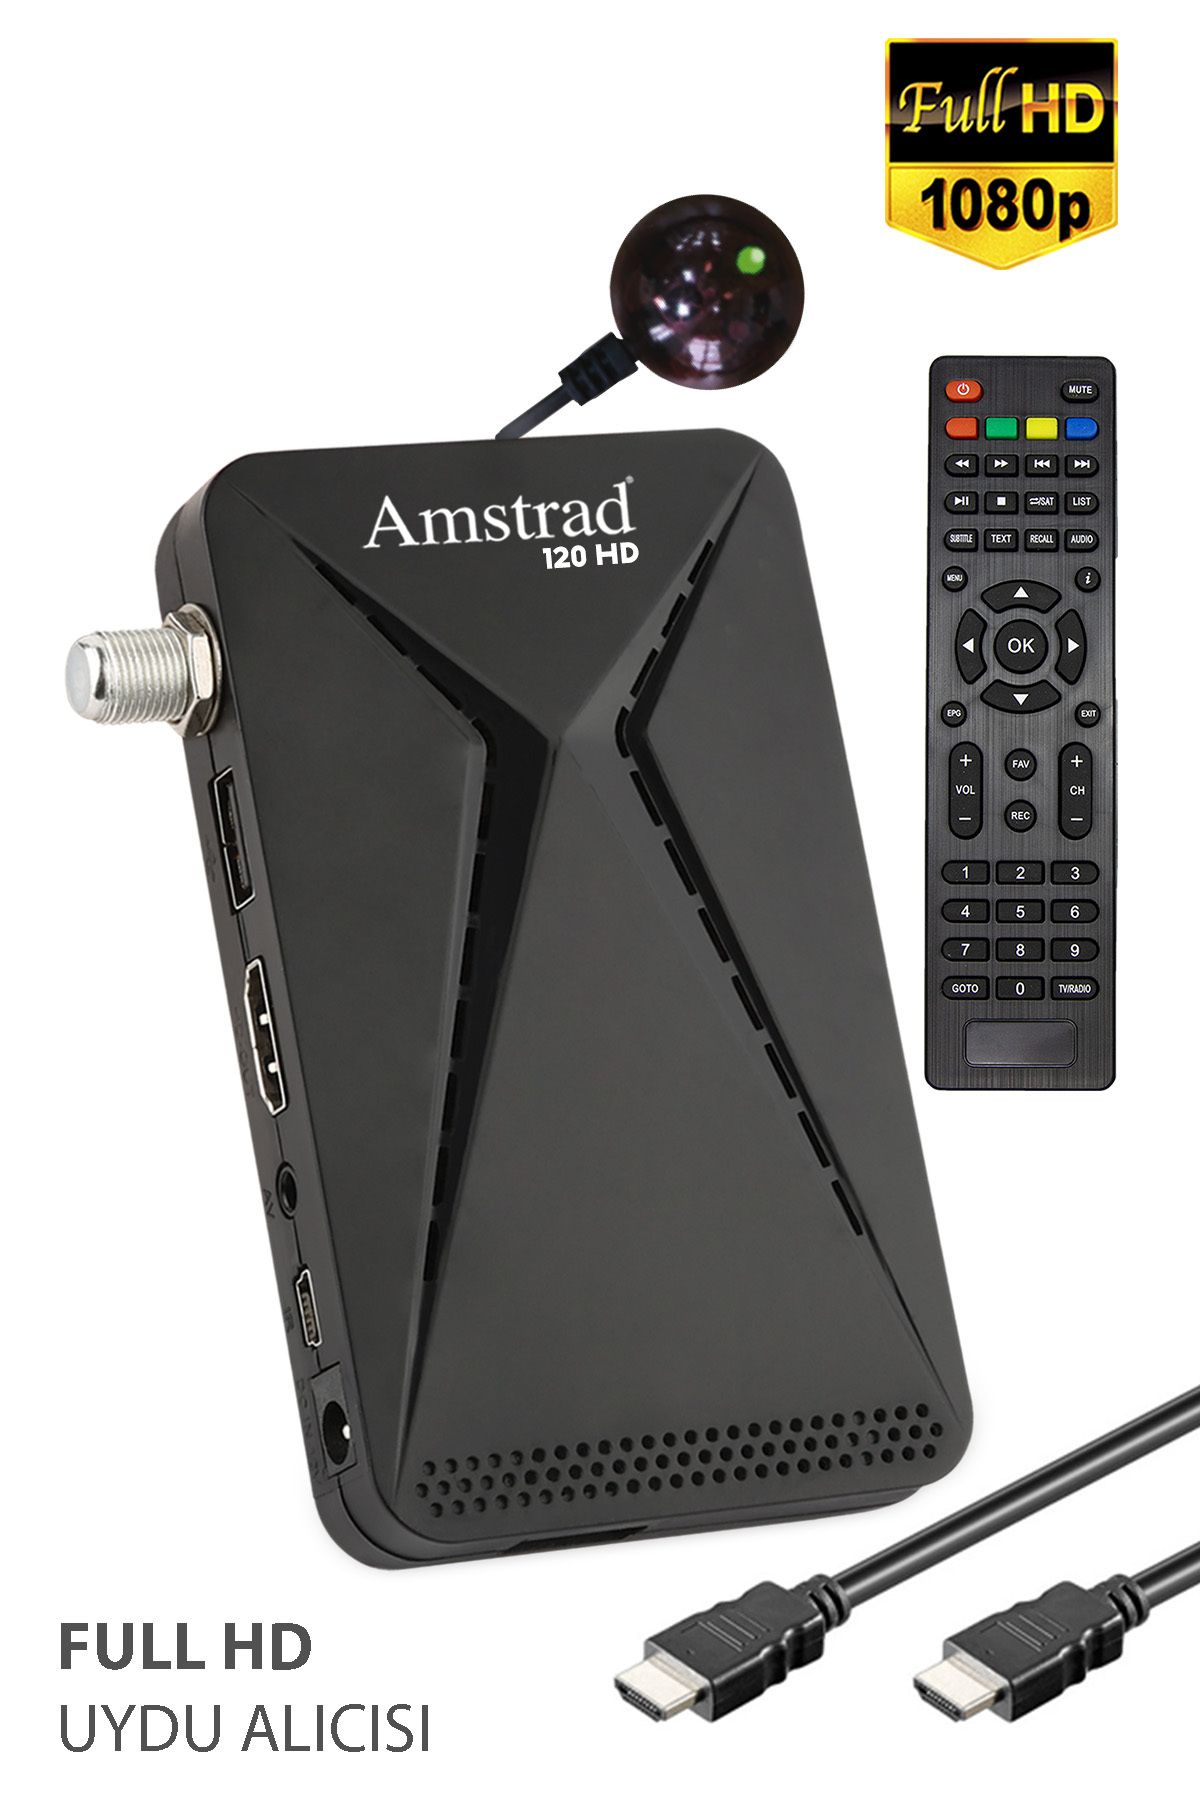 Amstrad 120 Hd - Mini Hd Uydu Alıcısı - ( Kanallar Yüklü - Tkgs - Usb - Hdmi )